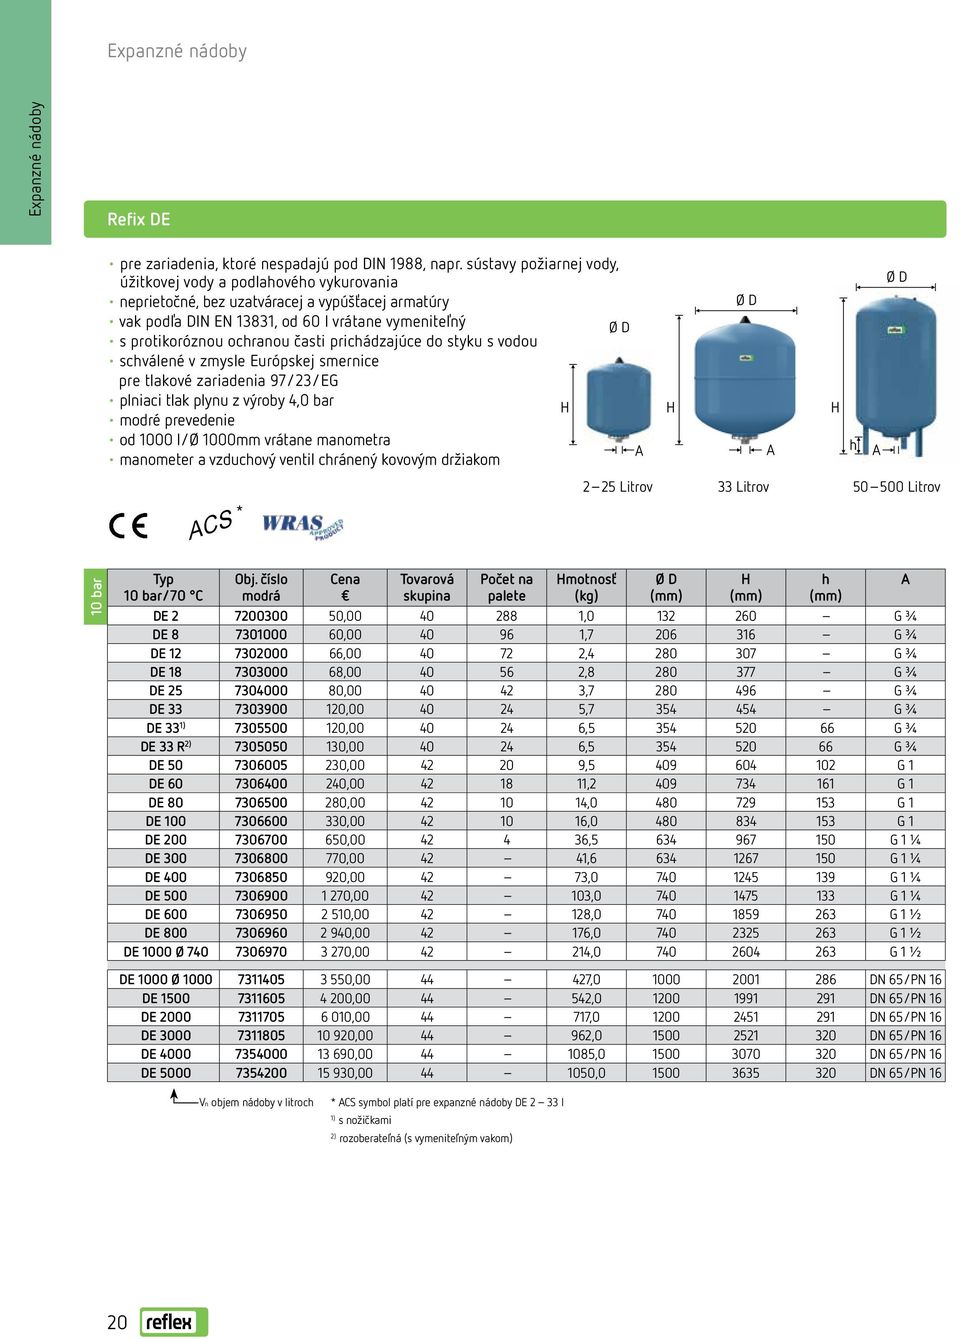 prichádzajúce do styku s vodou schválené v zmysle Európskej smernice pre tlakové zariadenia 97/23/EG plniaci tlak plynu z výroby 4,0 bar modré prevedenie od 1000 l/ø 1000 vrátane manometra manometer